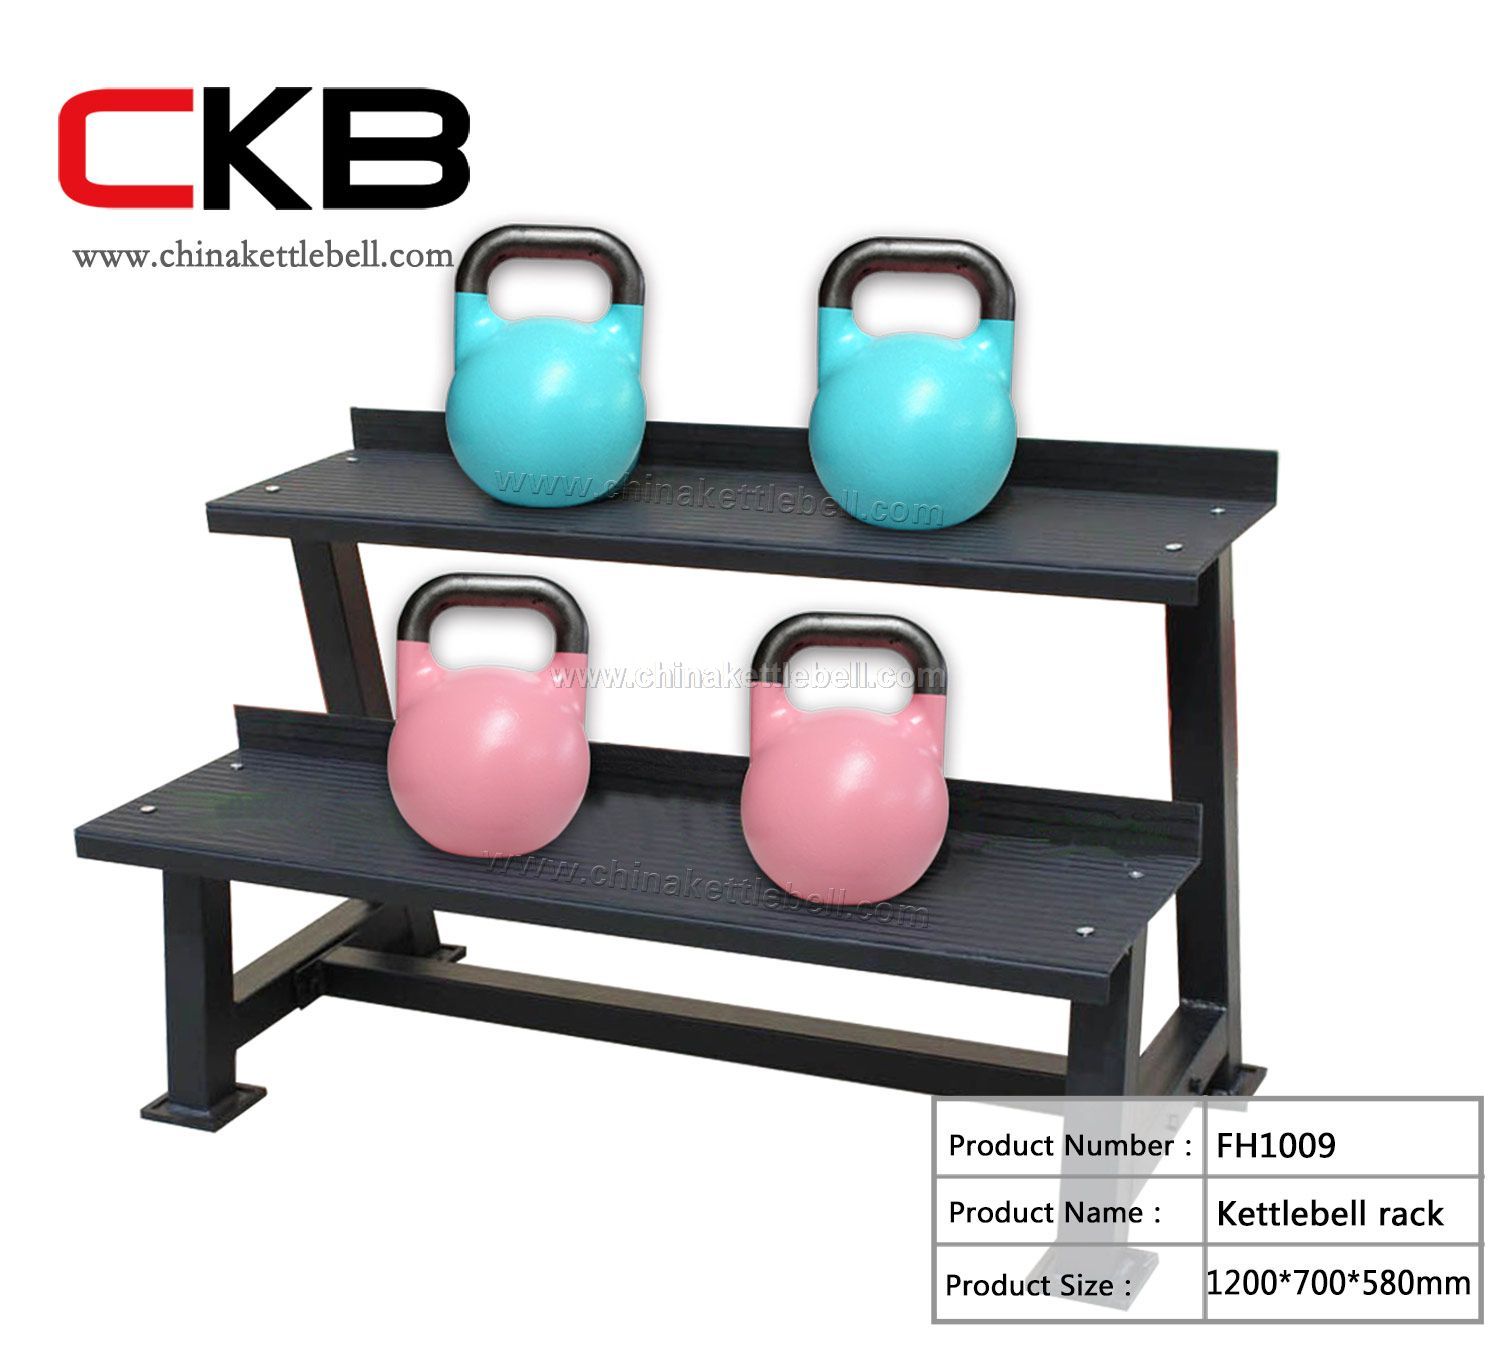 Kettlebell rack